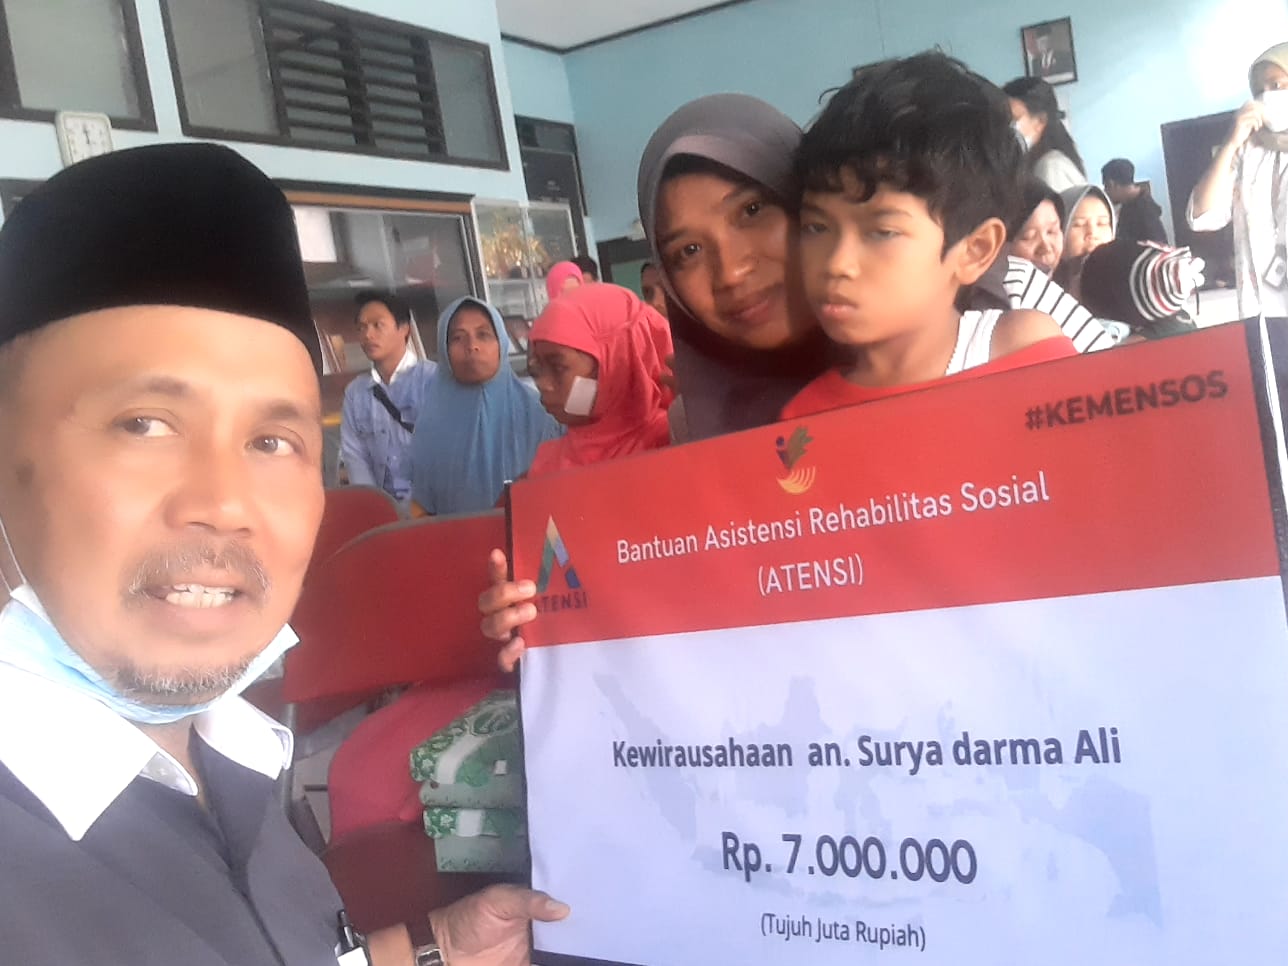 Tindak Lanjut HAN 2022 Kemensos di Berikan Bantuan untuk 14 Anak Disabilitas di Lombok Timur